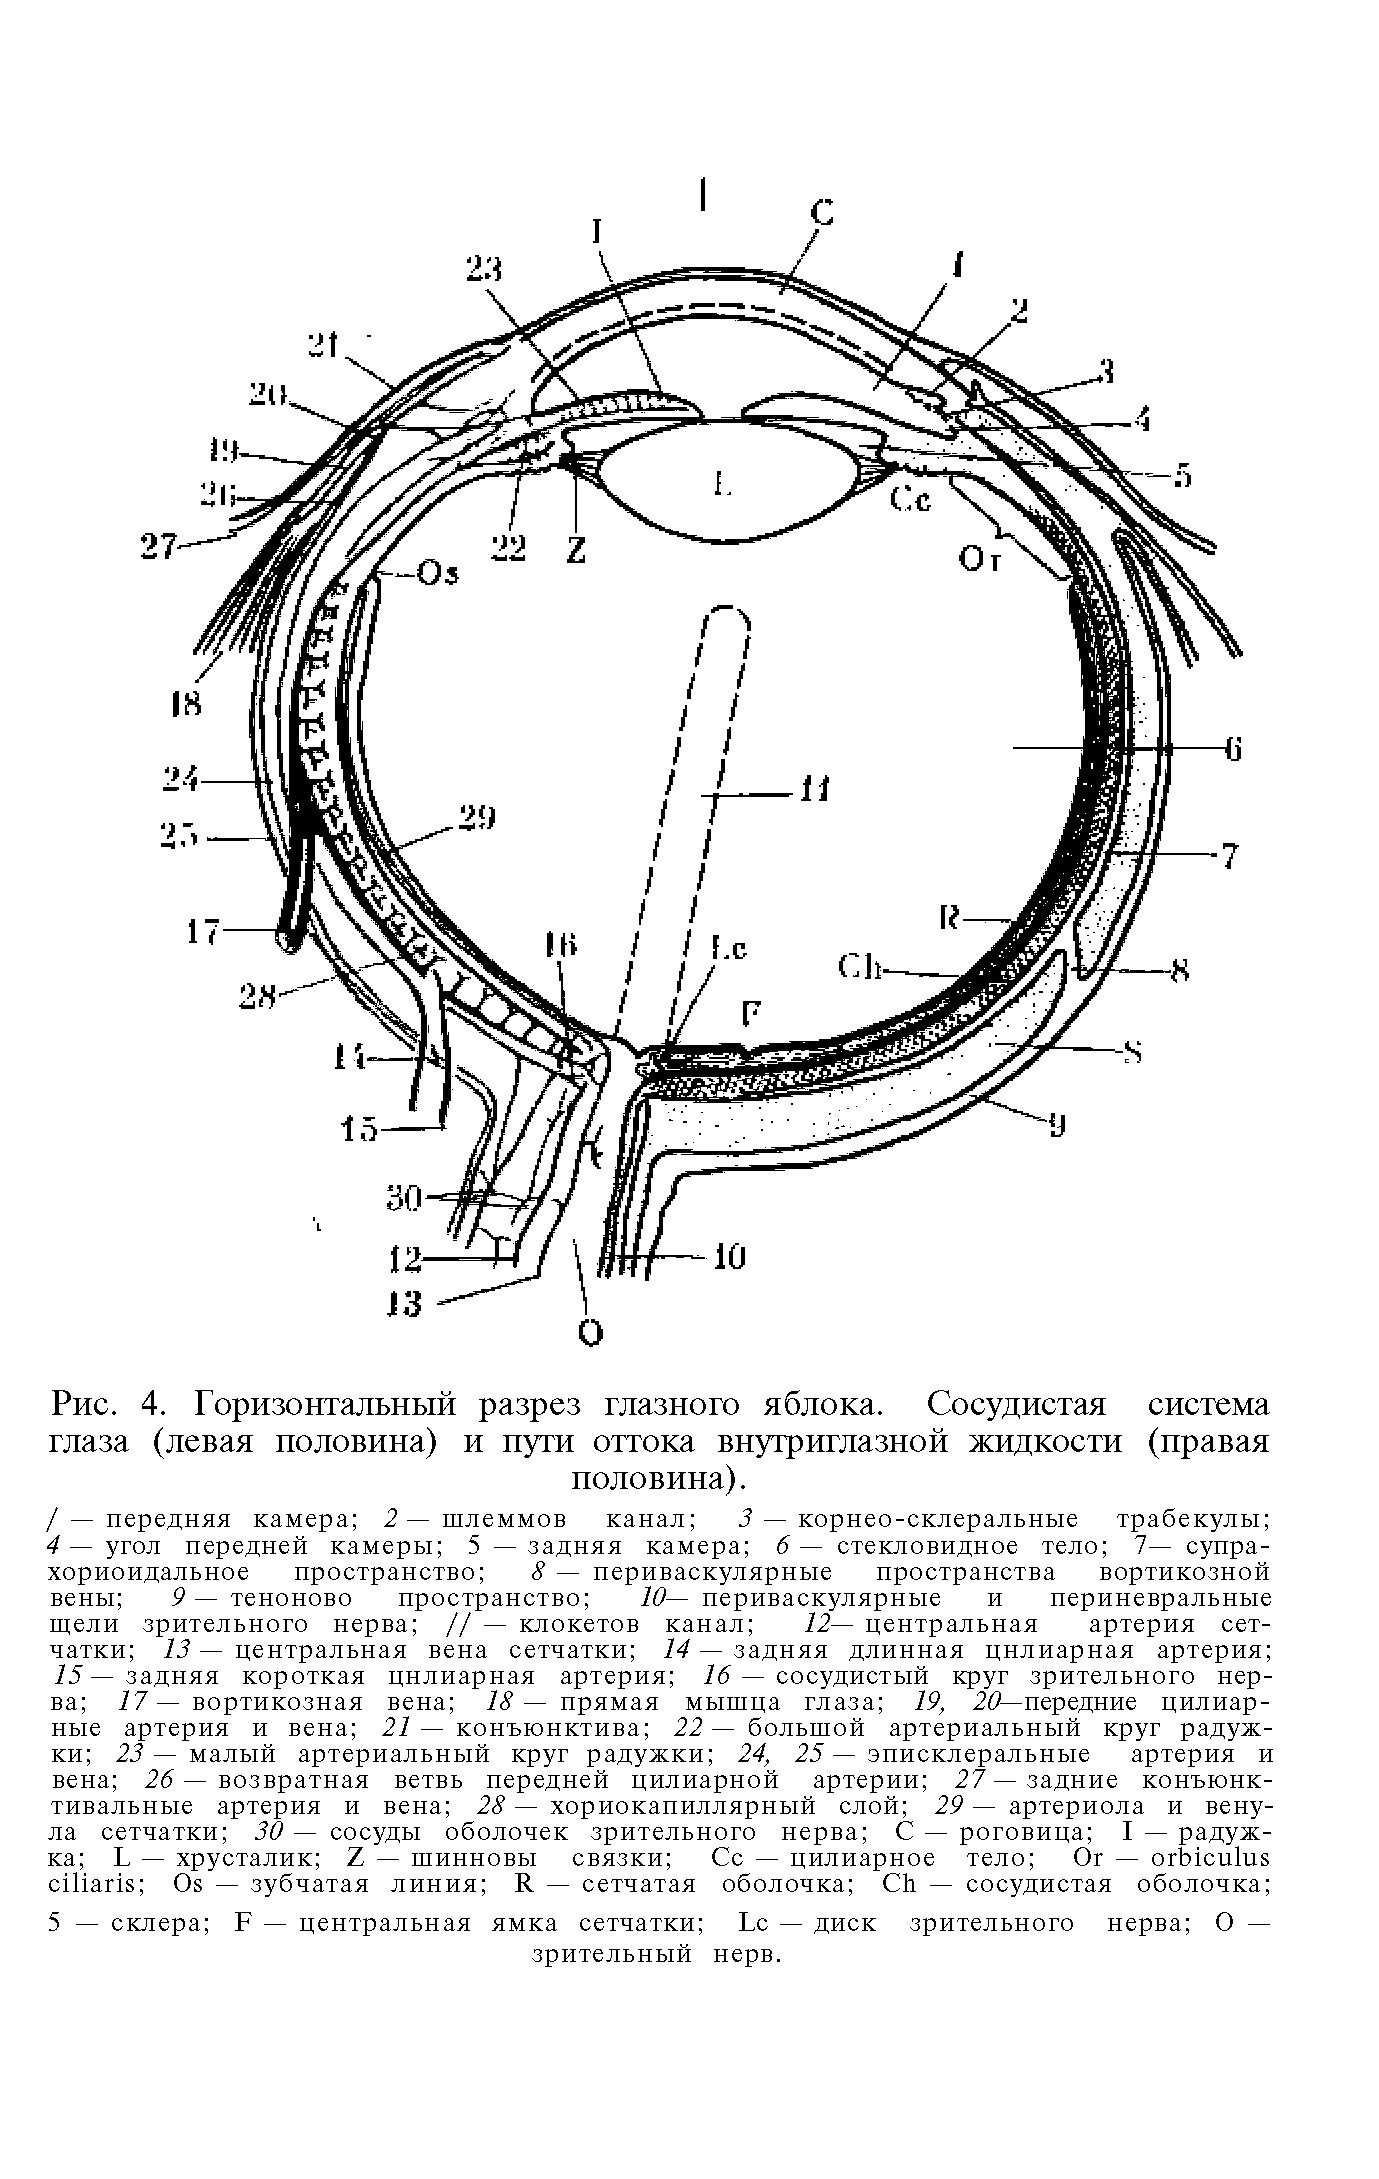 Рис. 4. Горизонтальный разрез глазного яблока. Сосудистая система глаза (левая половина) и пути оттока внутриглазной жидкости (правая половина).